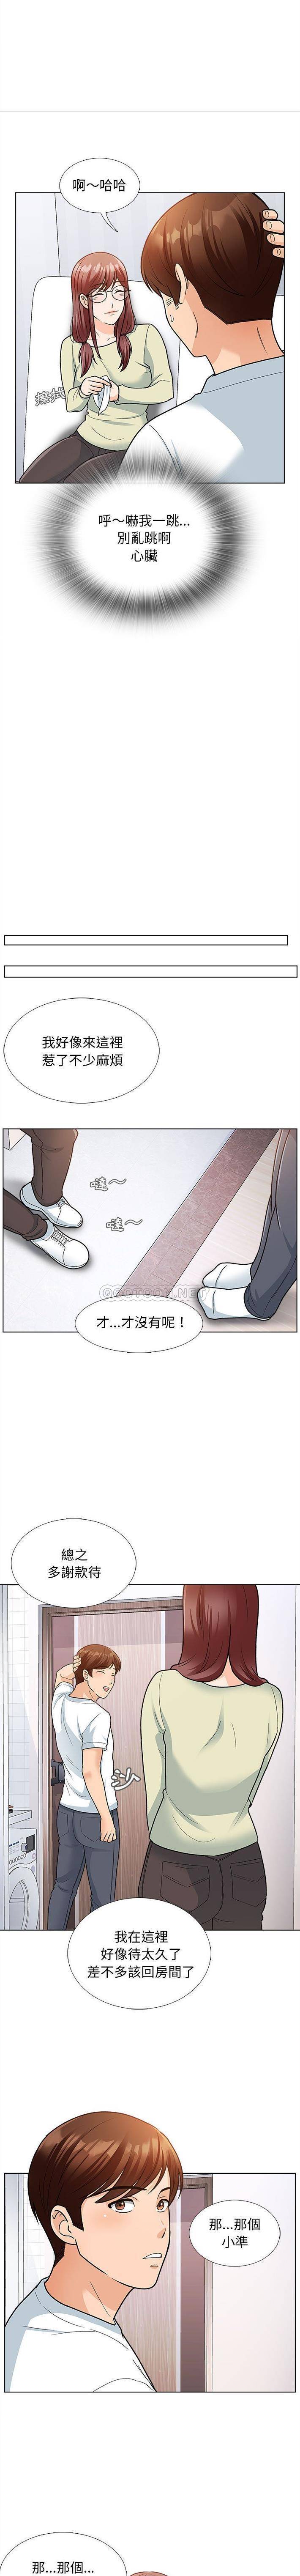 韩国污漫画 幸福公寓 第12话 2